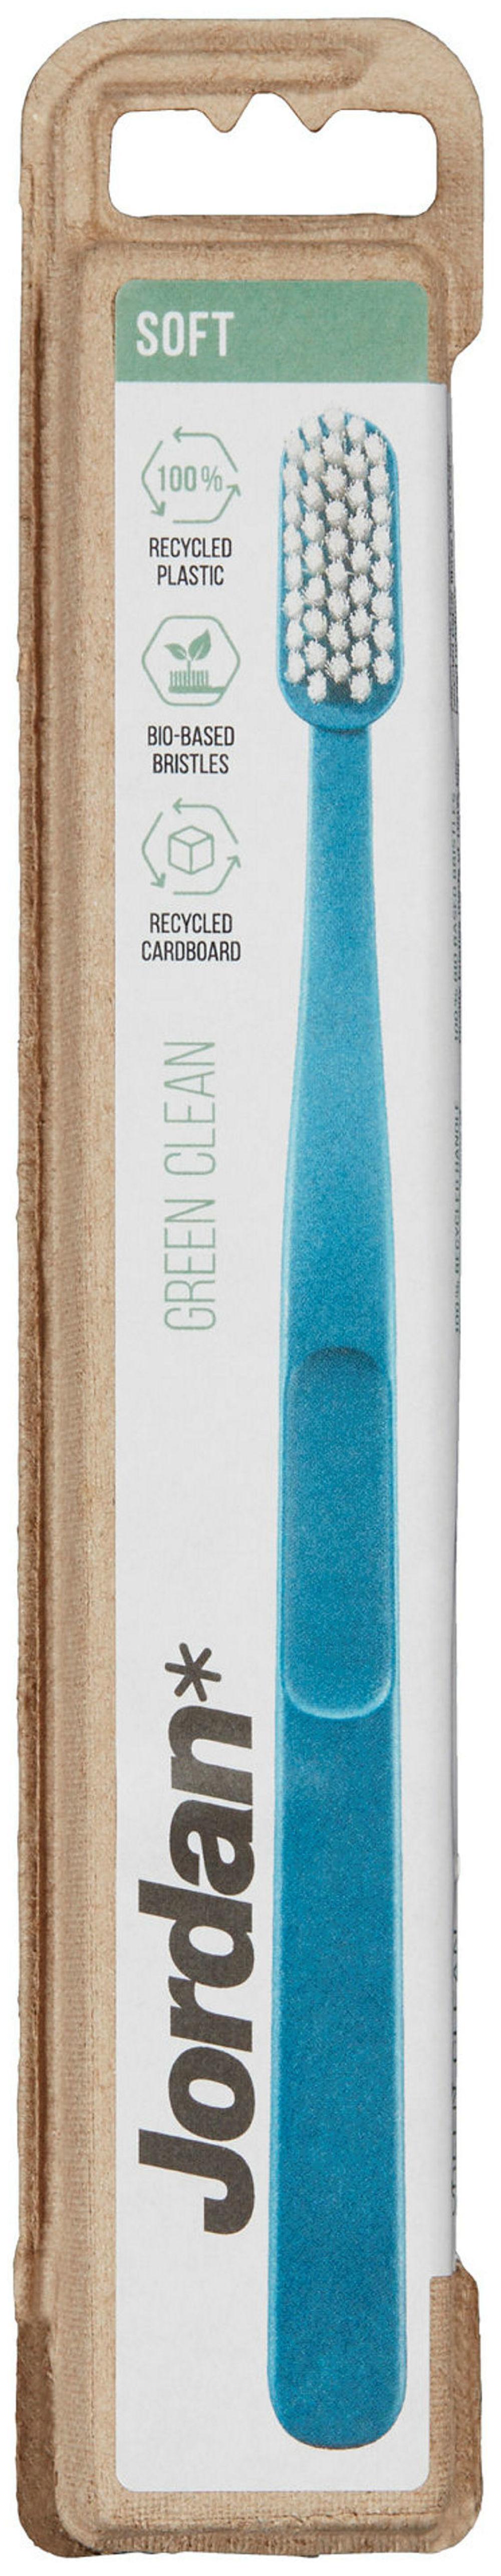 Jordan Tannbørste Green Clean Soft, 1 stk